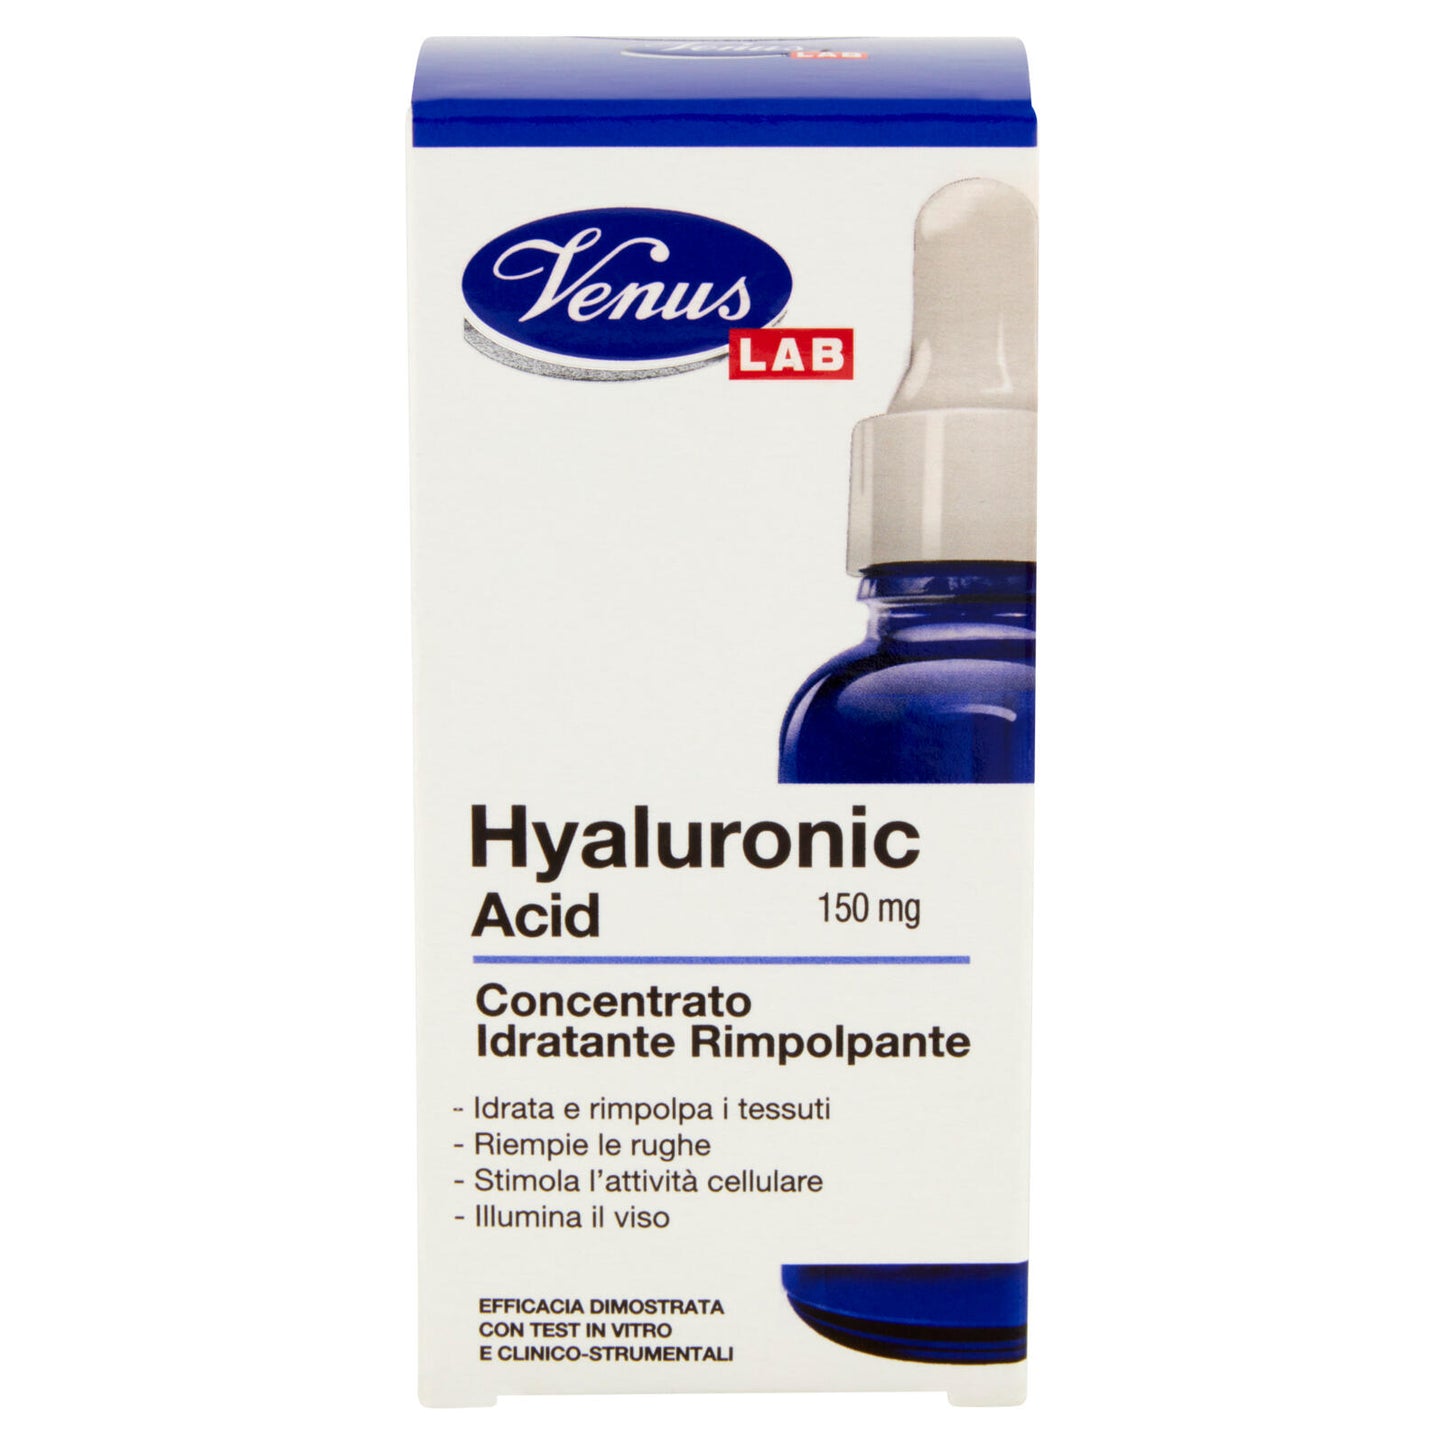 Venus Lab Hyaluronic Acid Concentrato Idratante Rimpolpante 30 mL